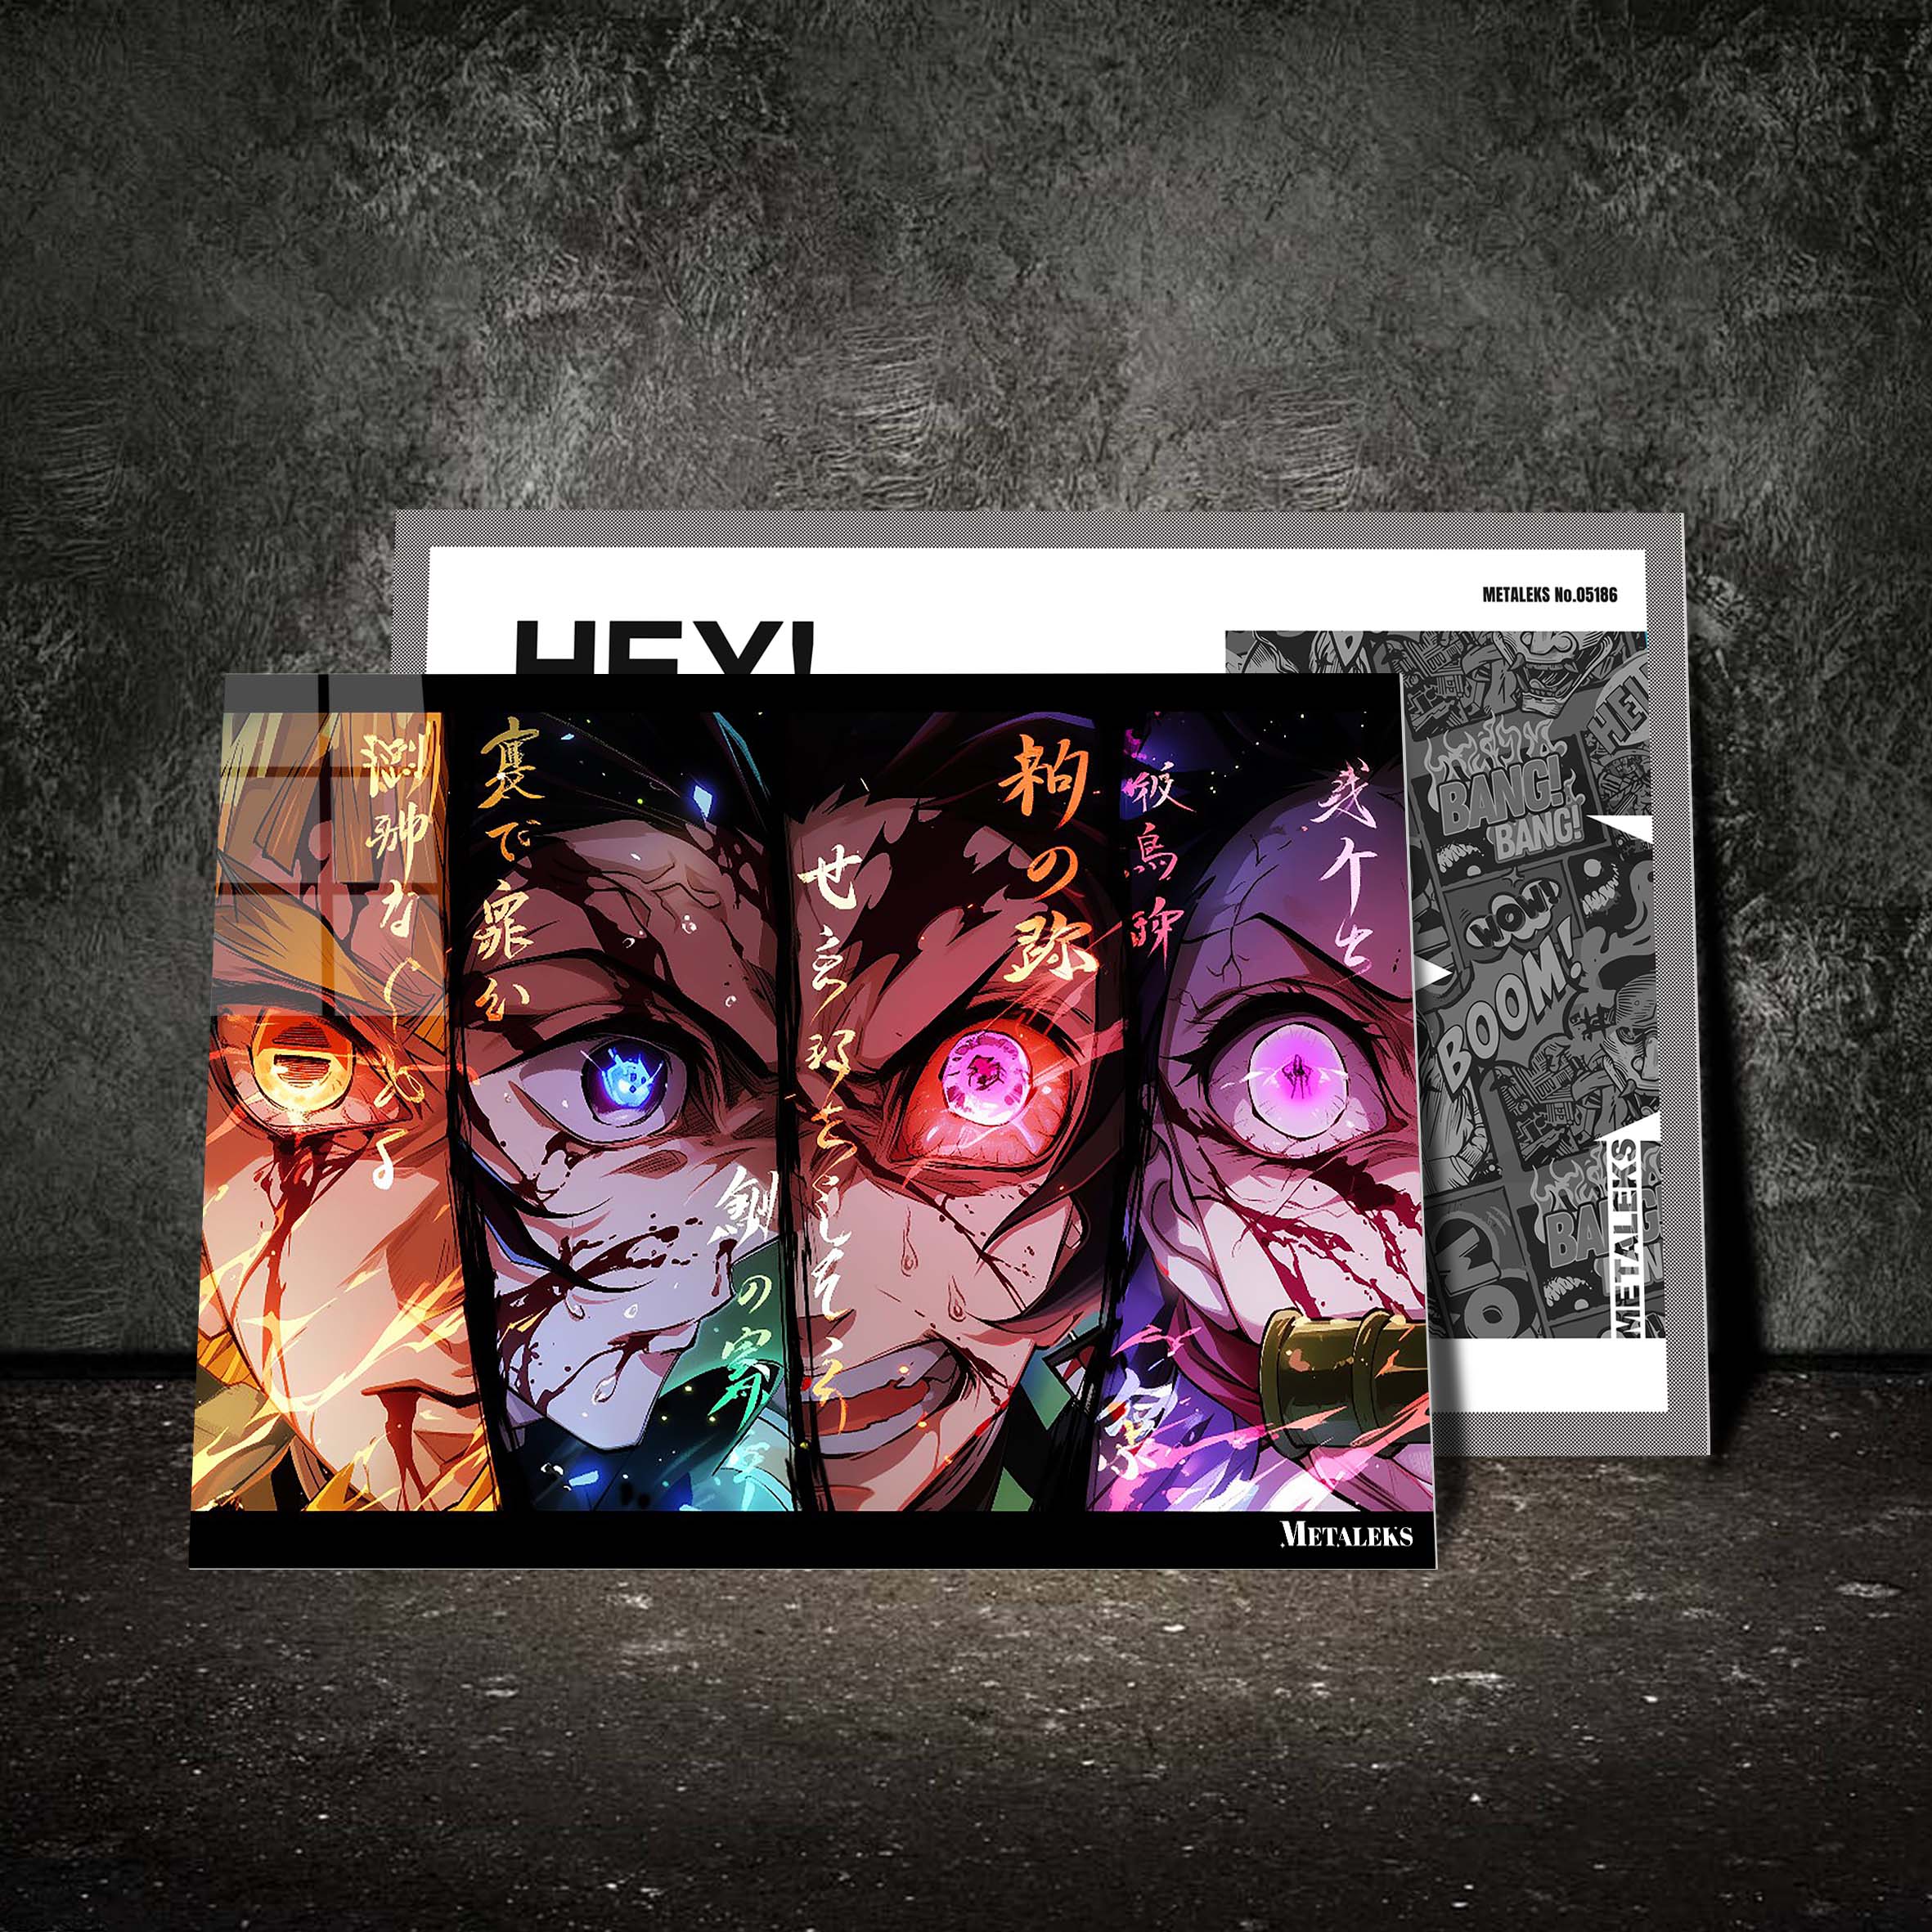 Zenetsu, Inosuke, Tanjiro, and Nezuko, | Demon Slayer-designed by @Beat Art